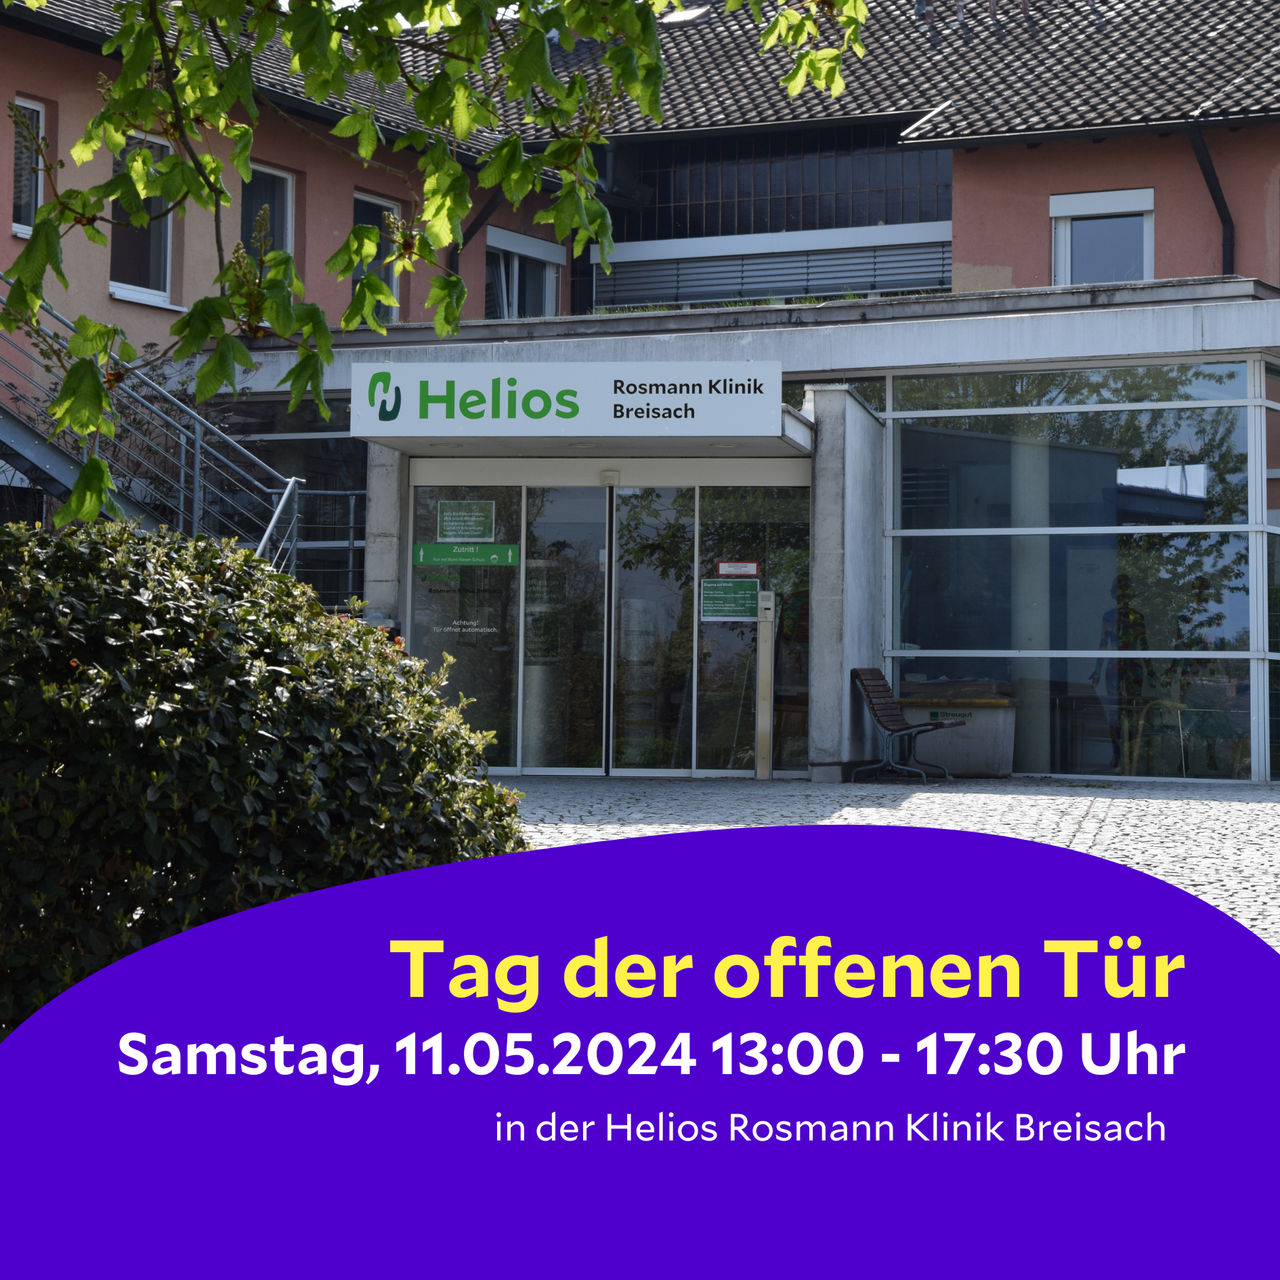 Tag der offenen Tür in der Helios Rosmann Klinik Breisach